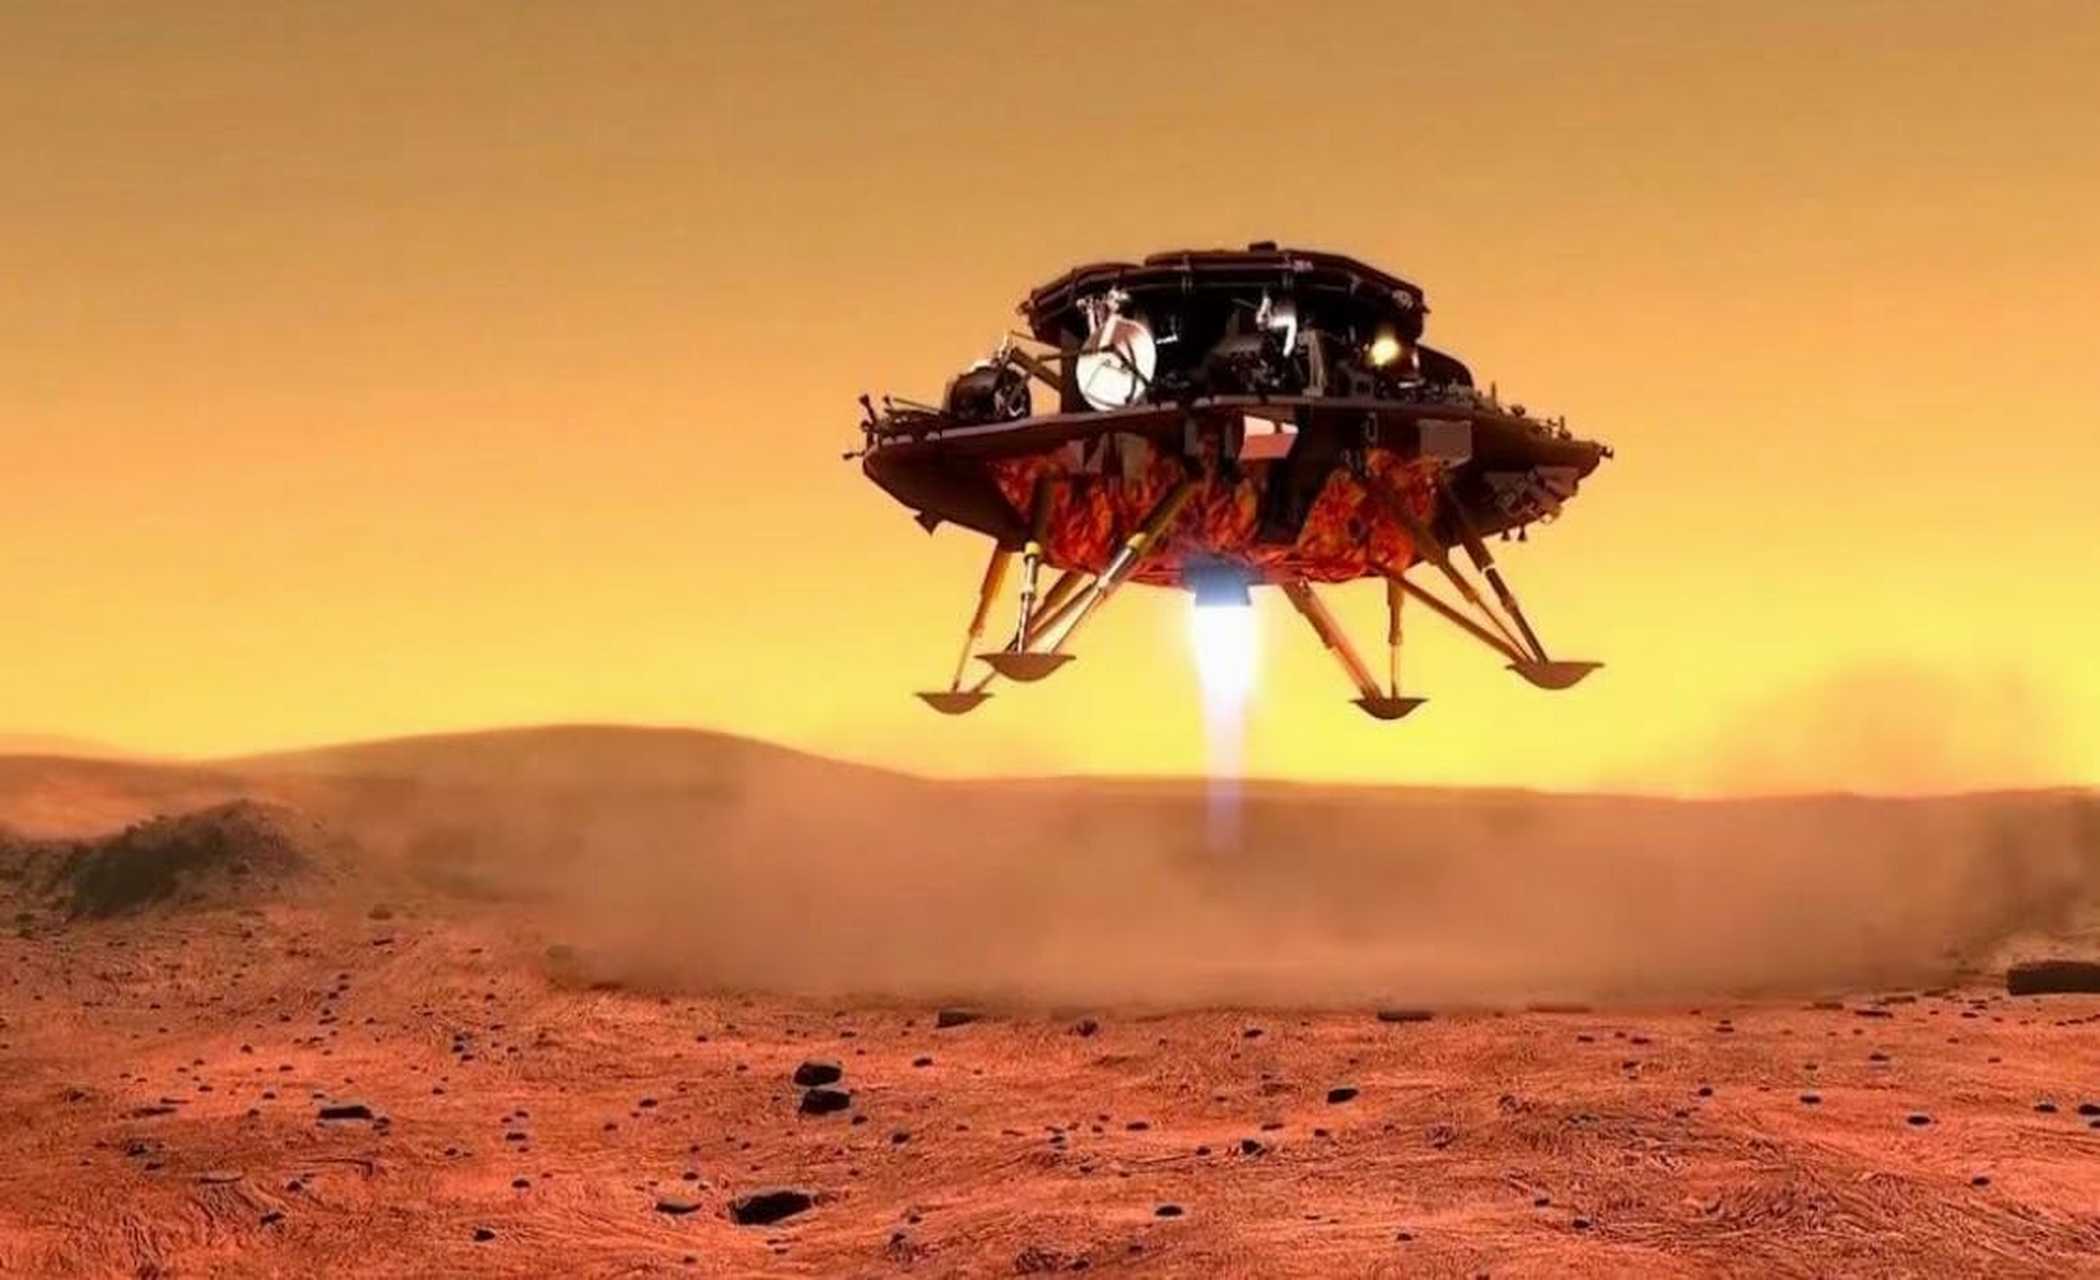 2021年5月15日,祝融号火星车成功登陆火星乌托邦平原